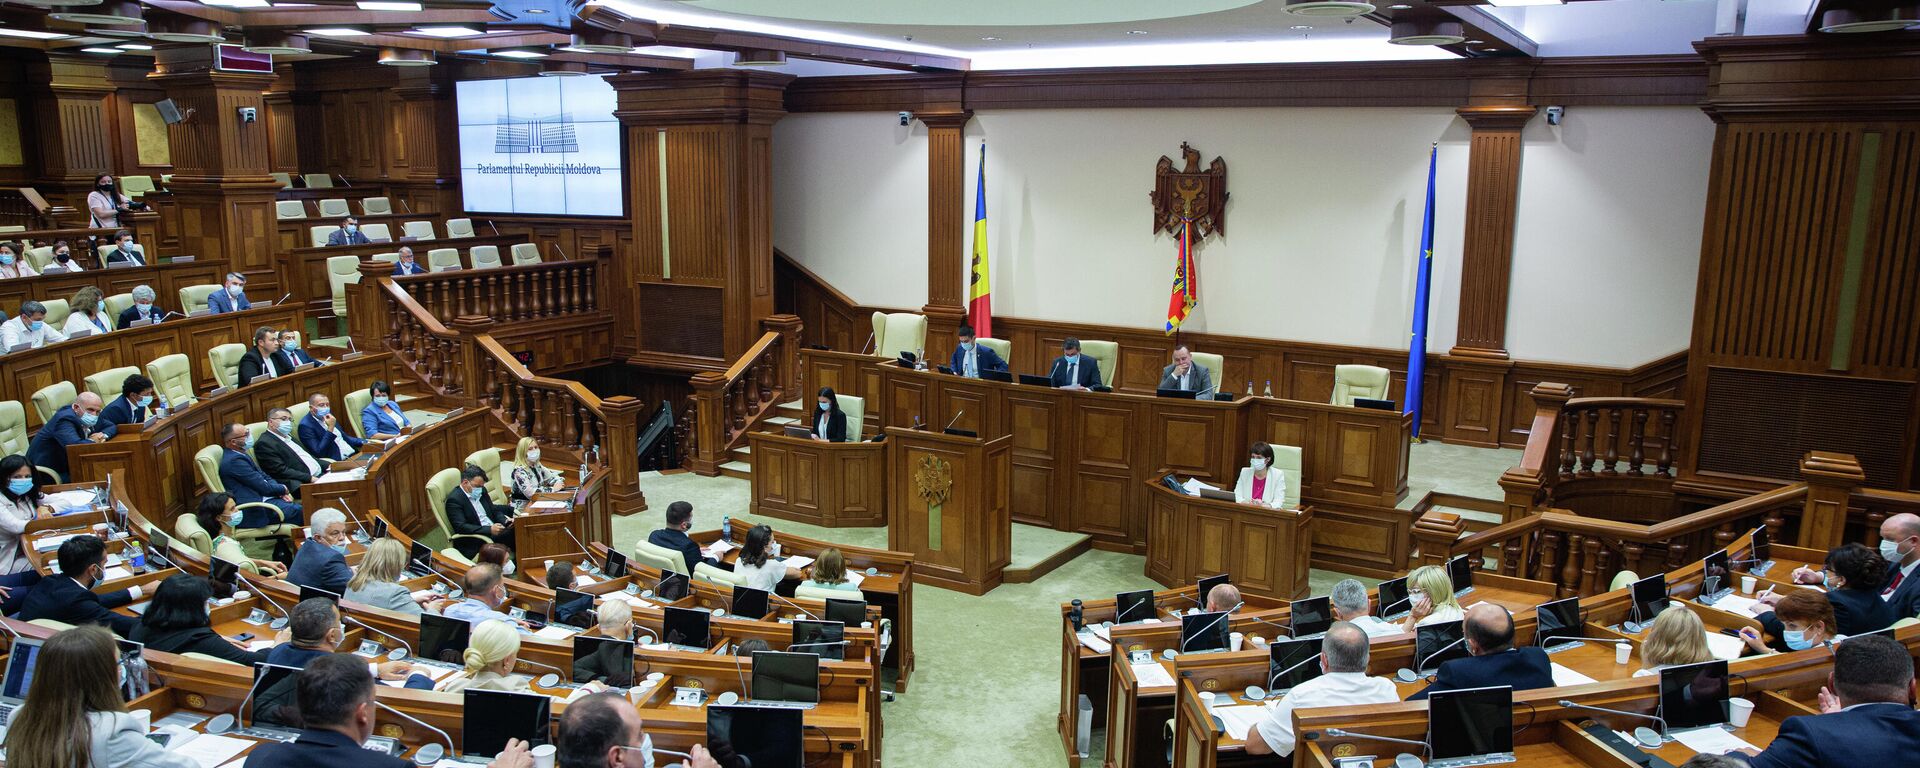 Deputați în Parlamentul Republicii Moldova  - Sputnik Moldova, 1920, 16.09.2021